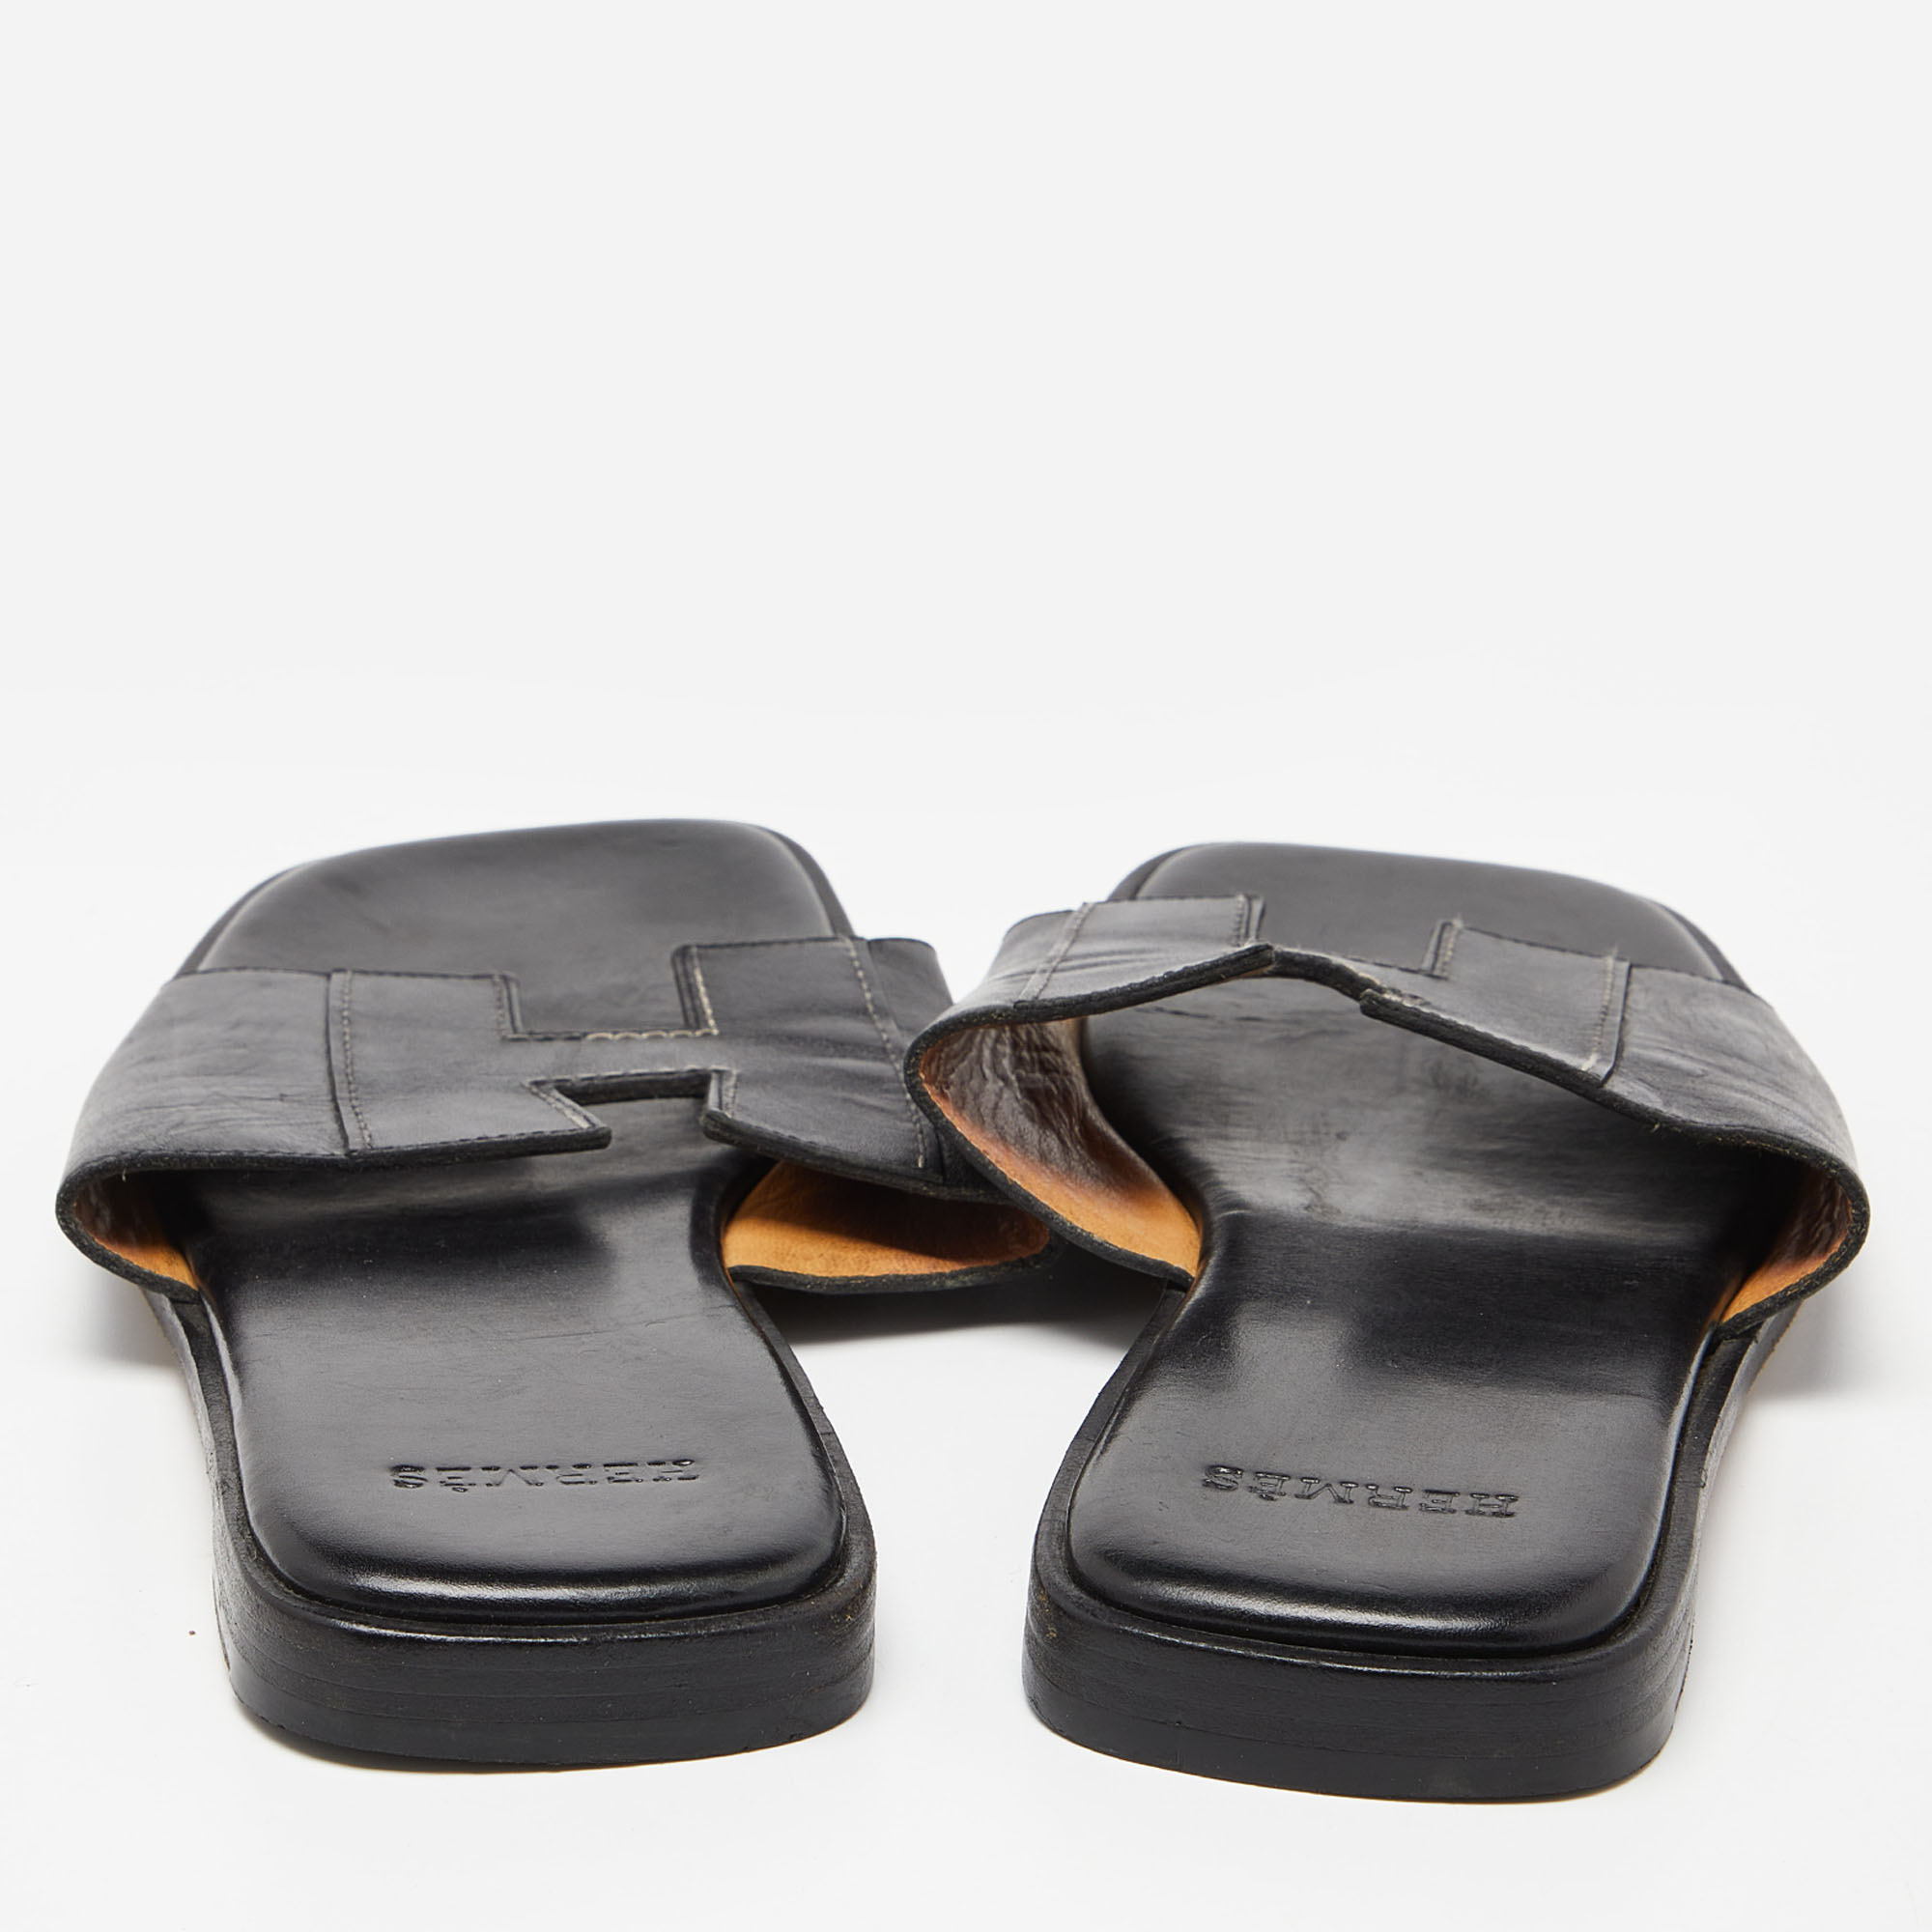 Hermes Black Leather Slides Size 40